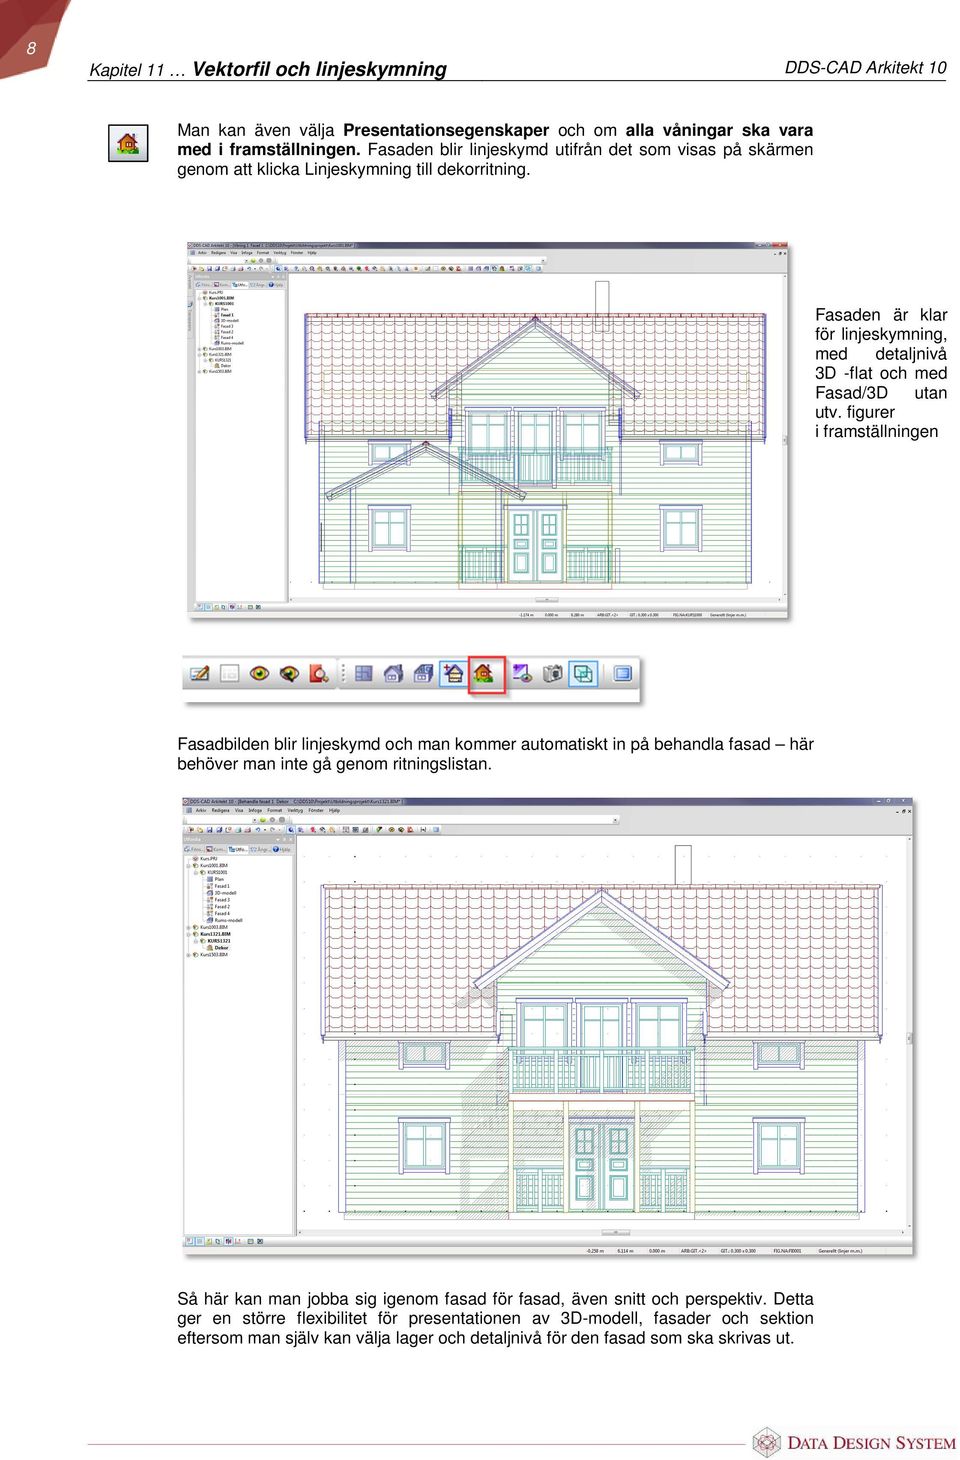 Fasaden är klar för linjeskymning, med detaljnivå 3D -flat och med Fasad/3D utan utv.